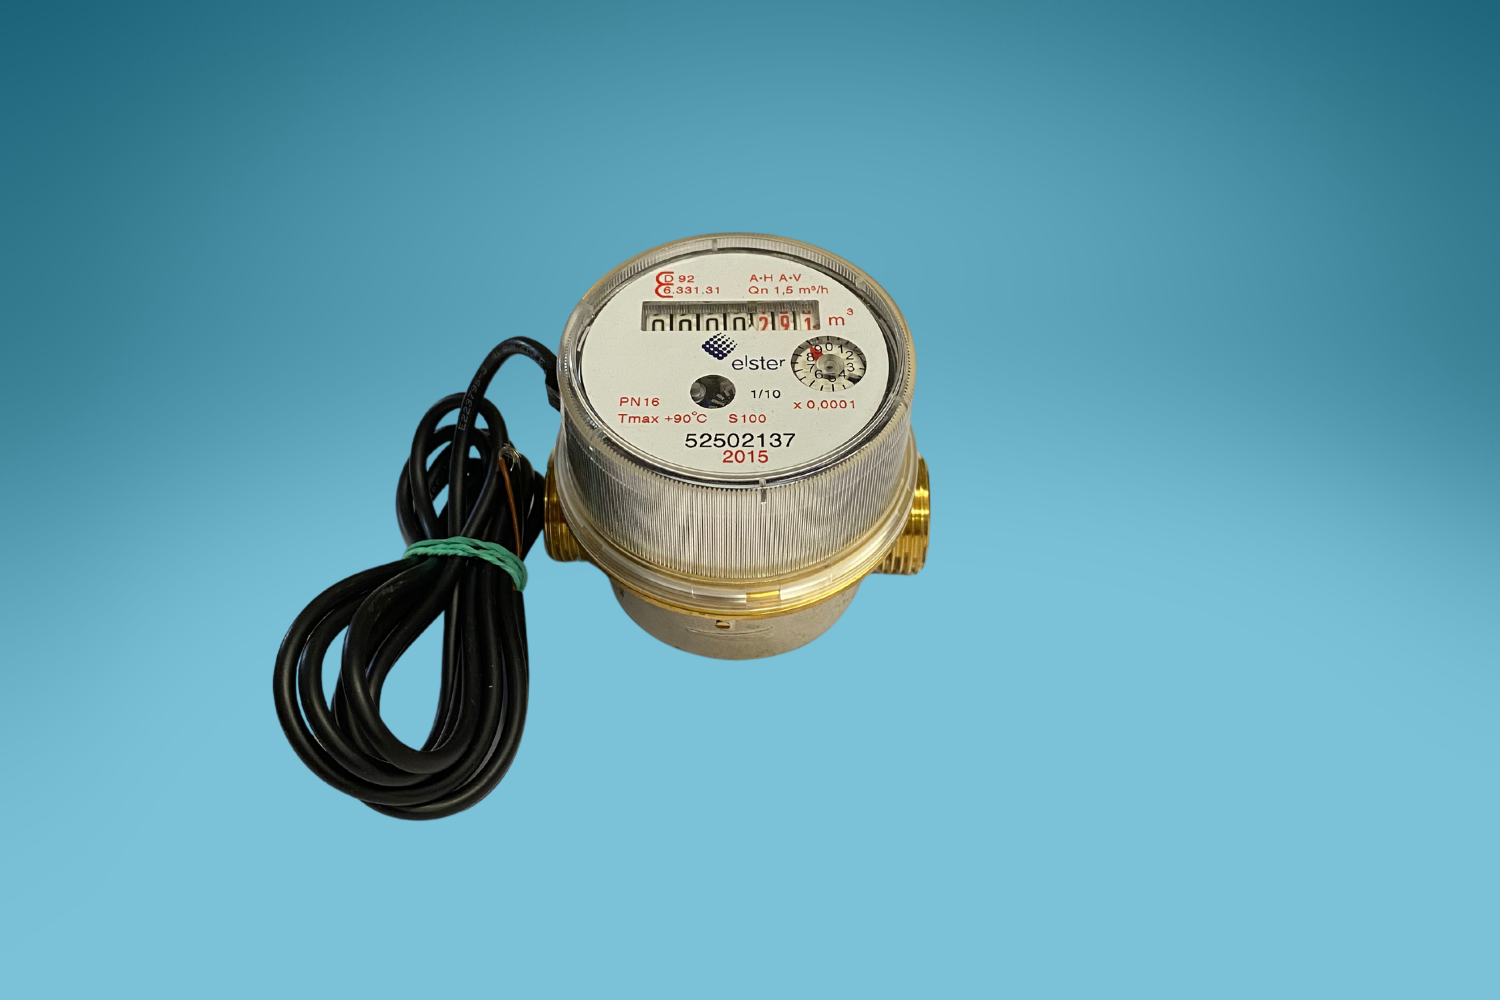 Compteur d'eau domestique pour l'eau froide Picoflux S100, 3/4", 130 mm